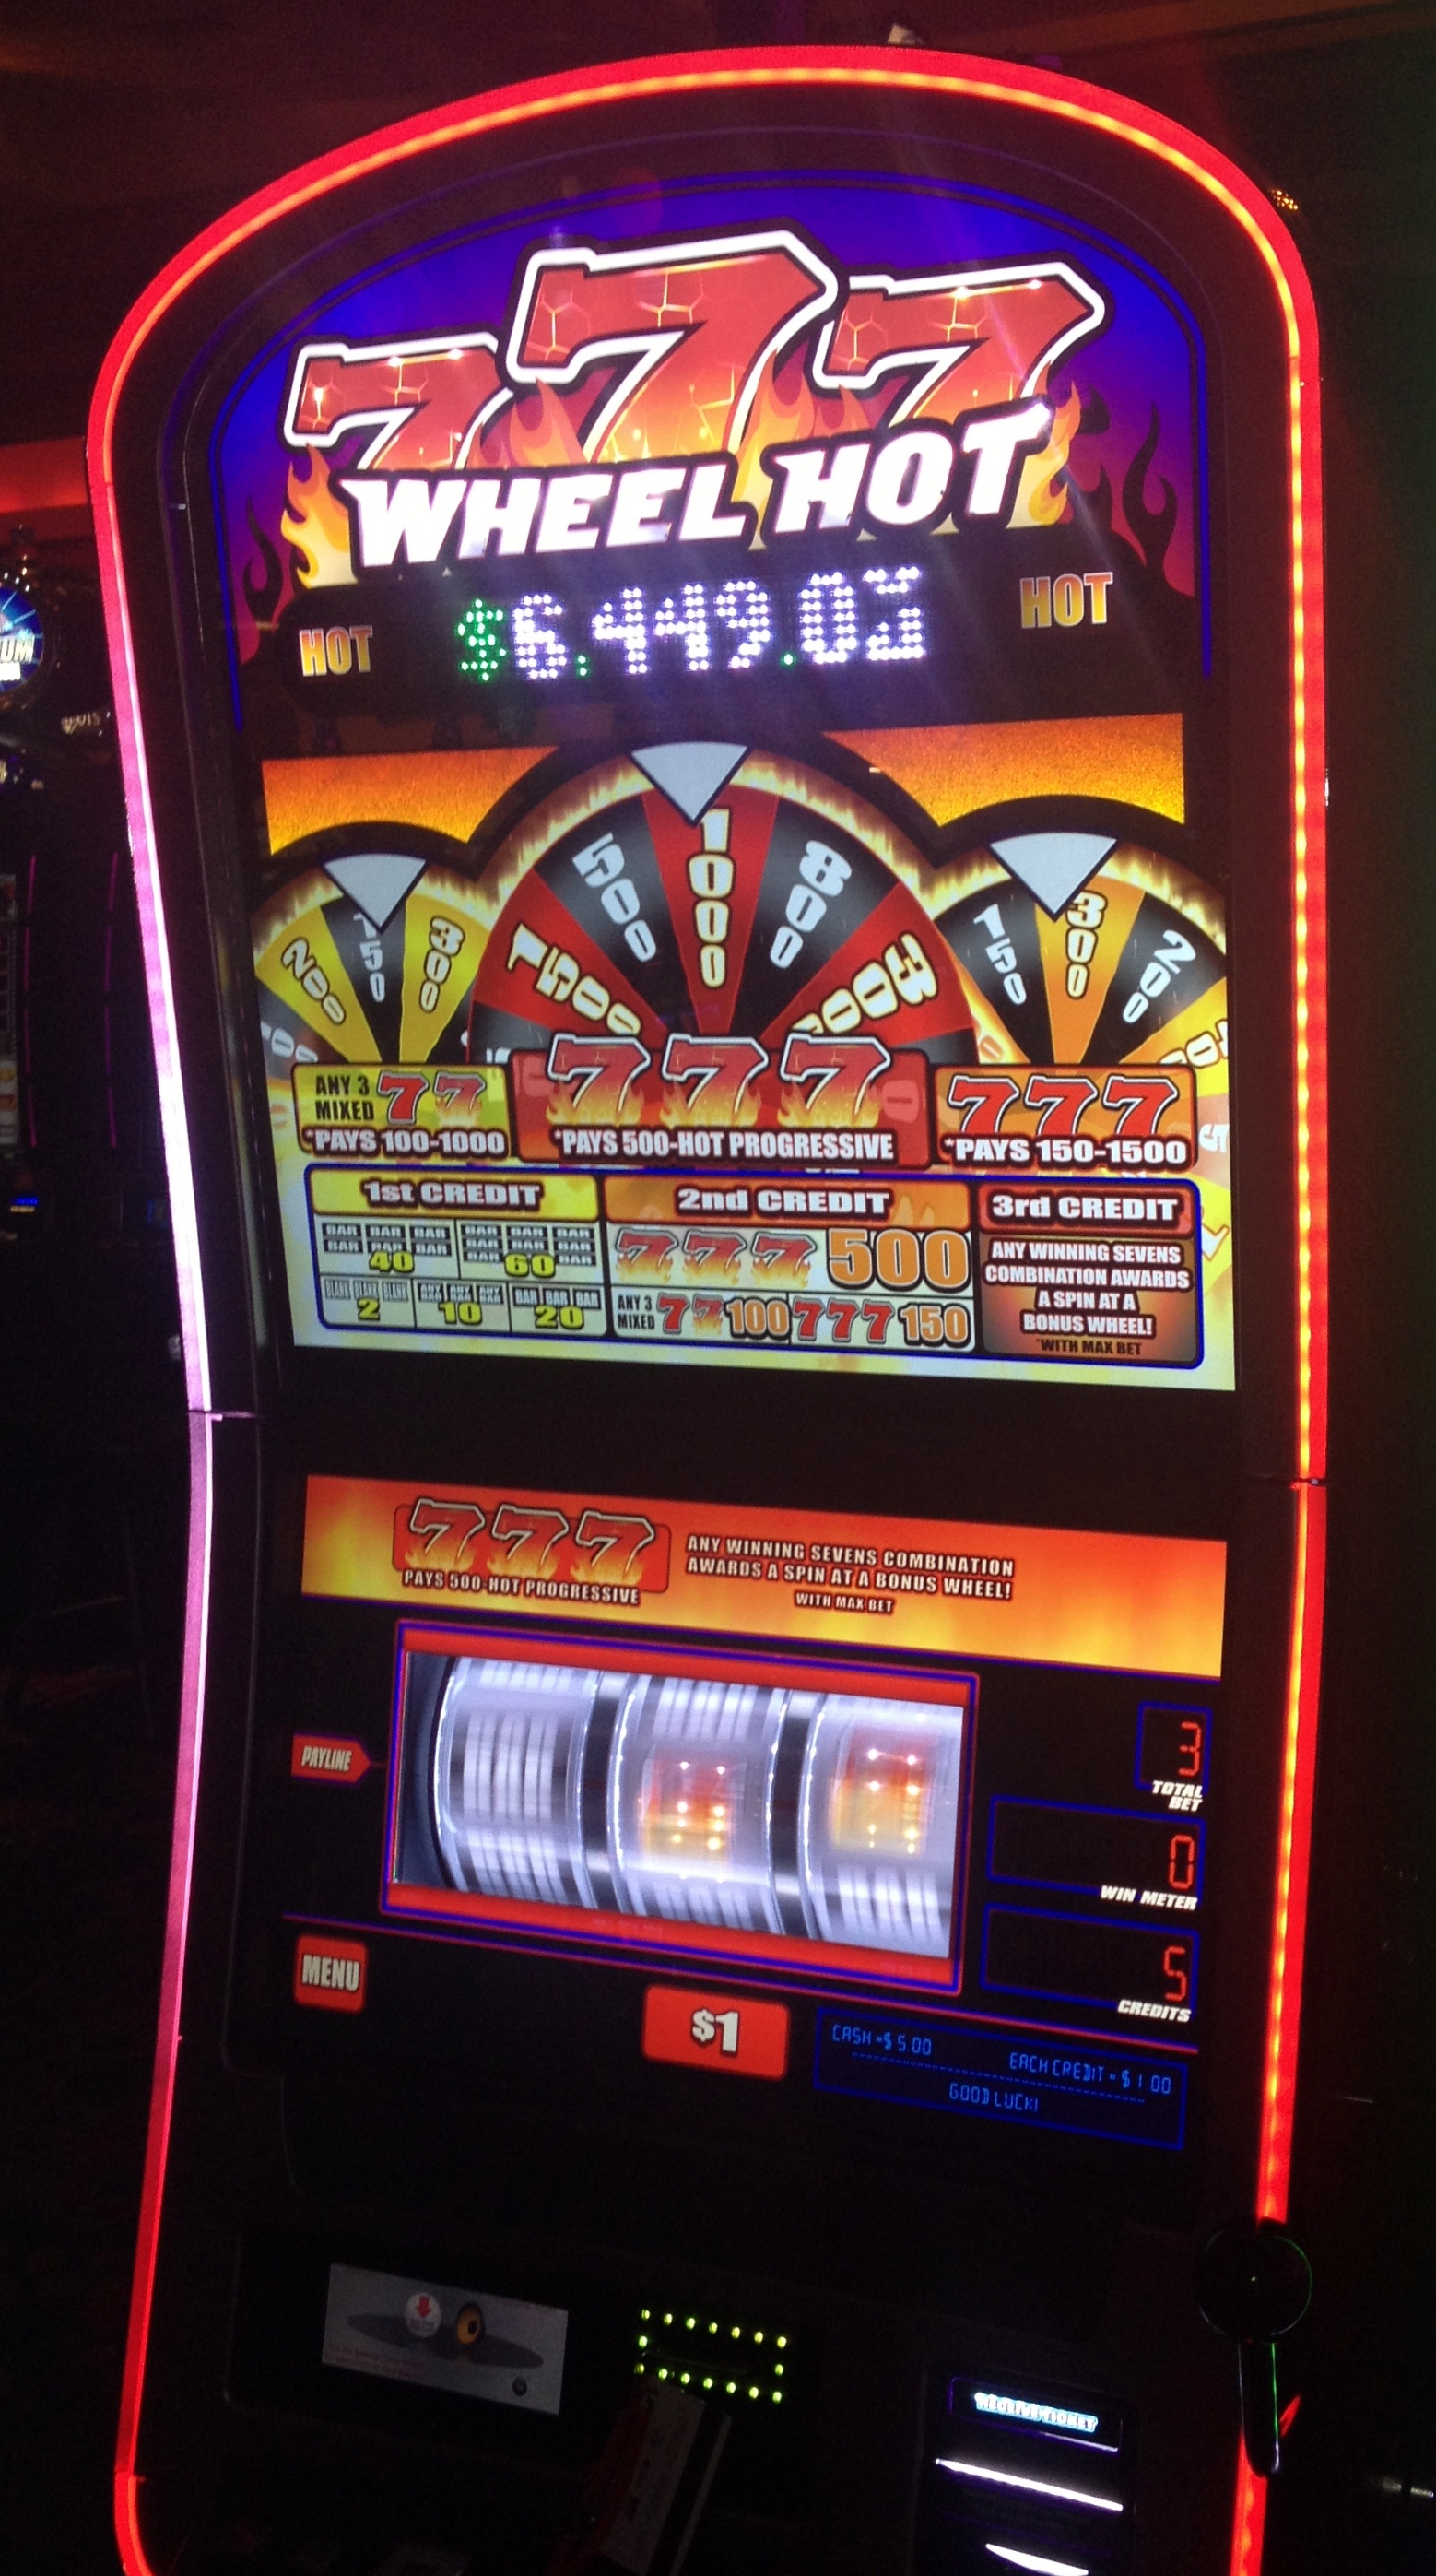 So Hot Slot Machine